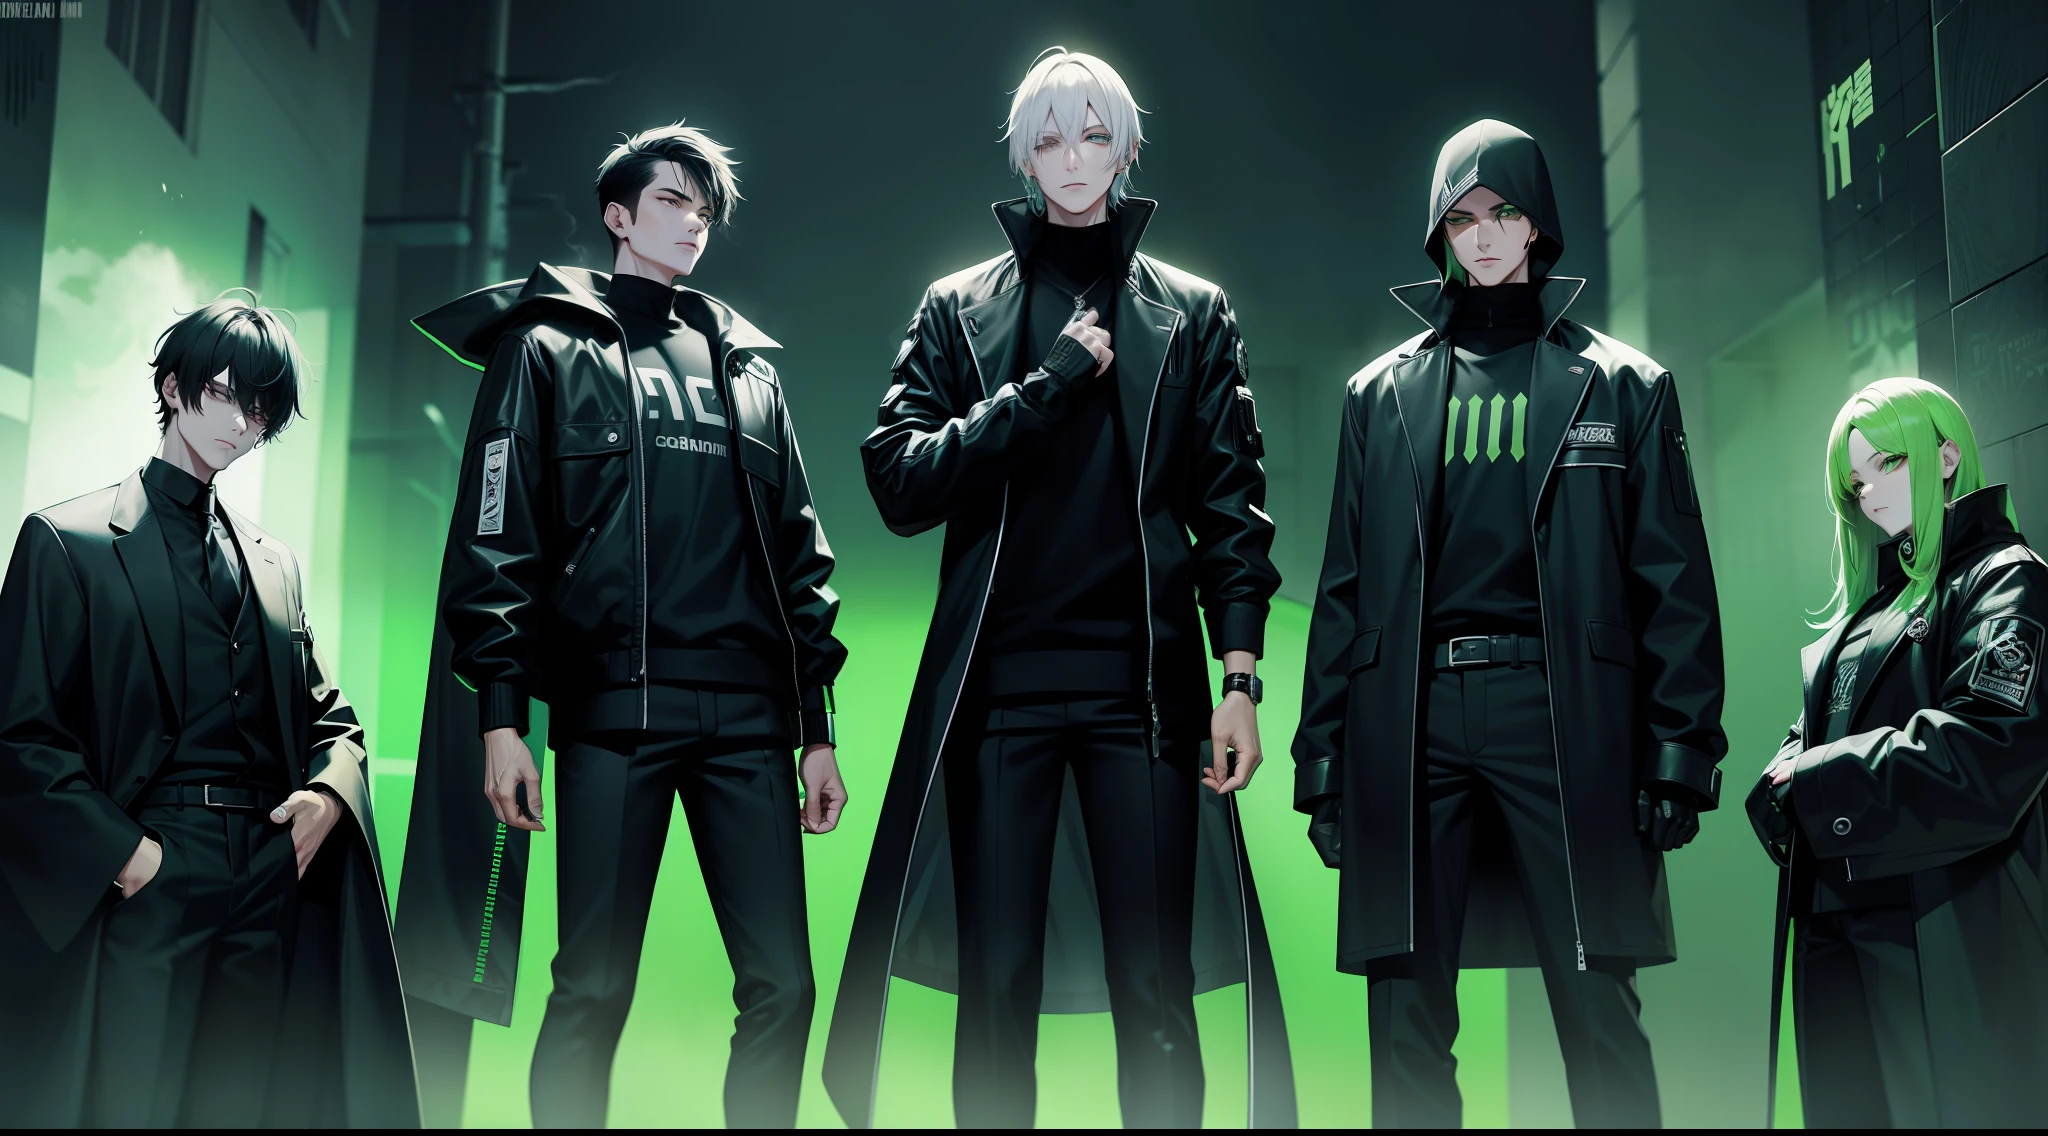 eine Cyber-Gang in schwarzer Kleidung mit grünen Details, Rauchaura, Gift